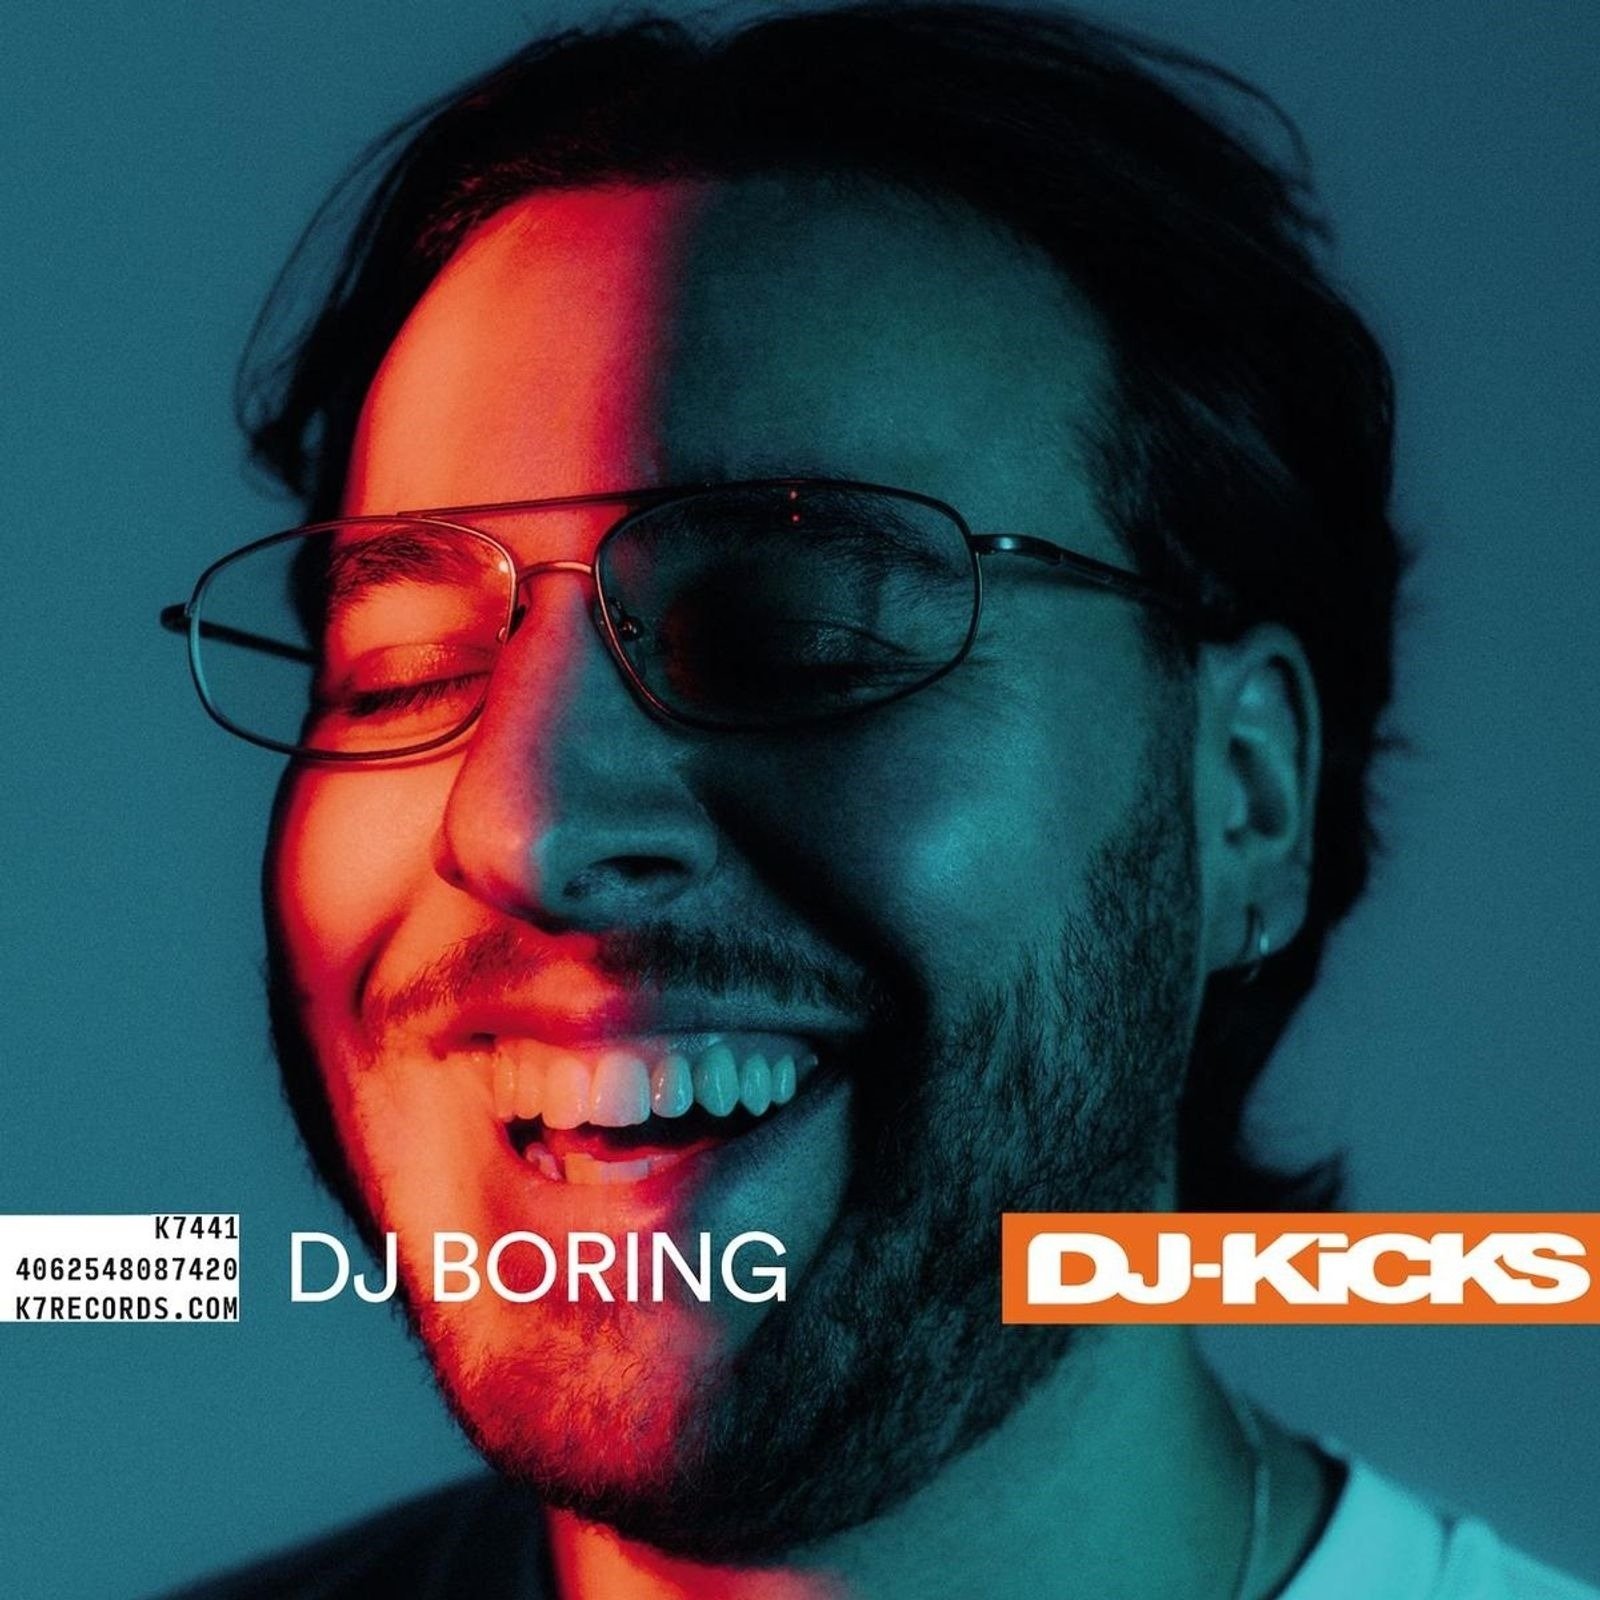 CD Shop - DJ BORING DJ-KICKS: DJ BORING